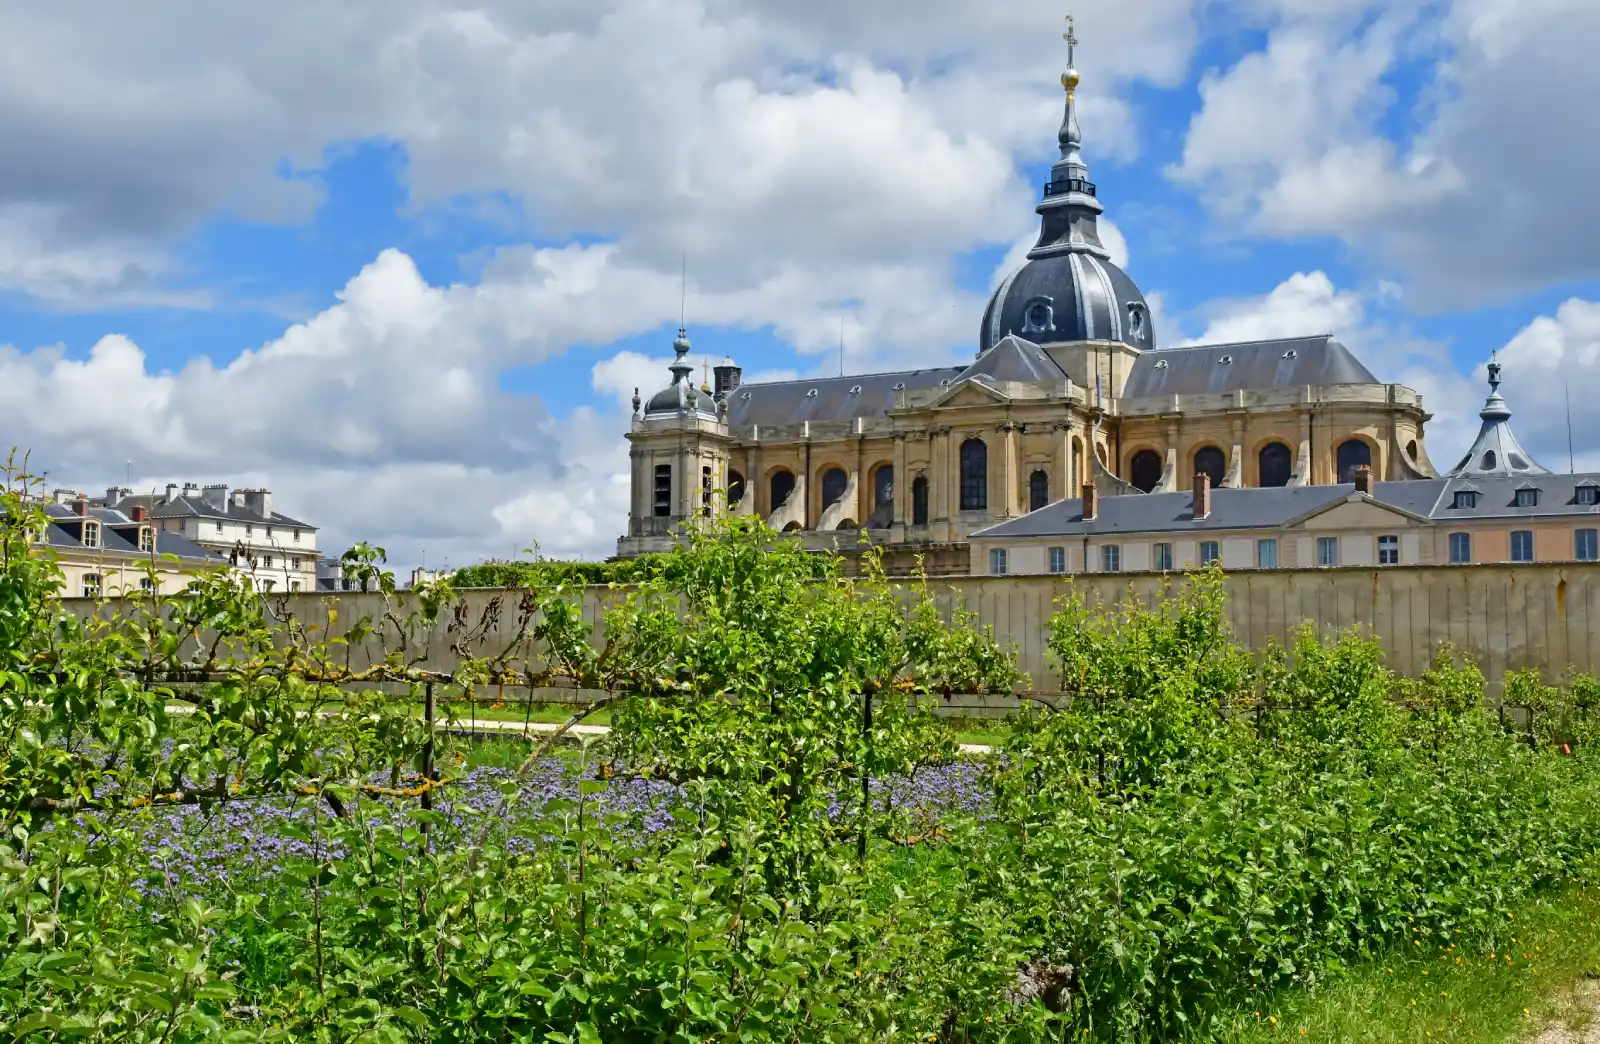 Hôtel Versailles Chantier - Le potager du roi